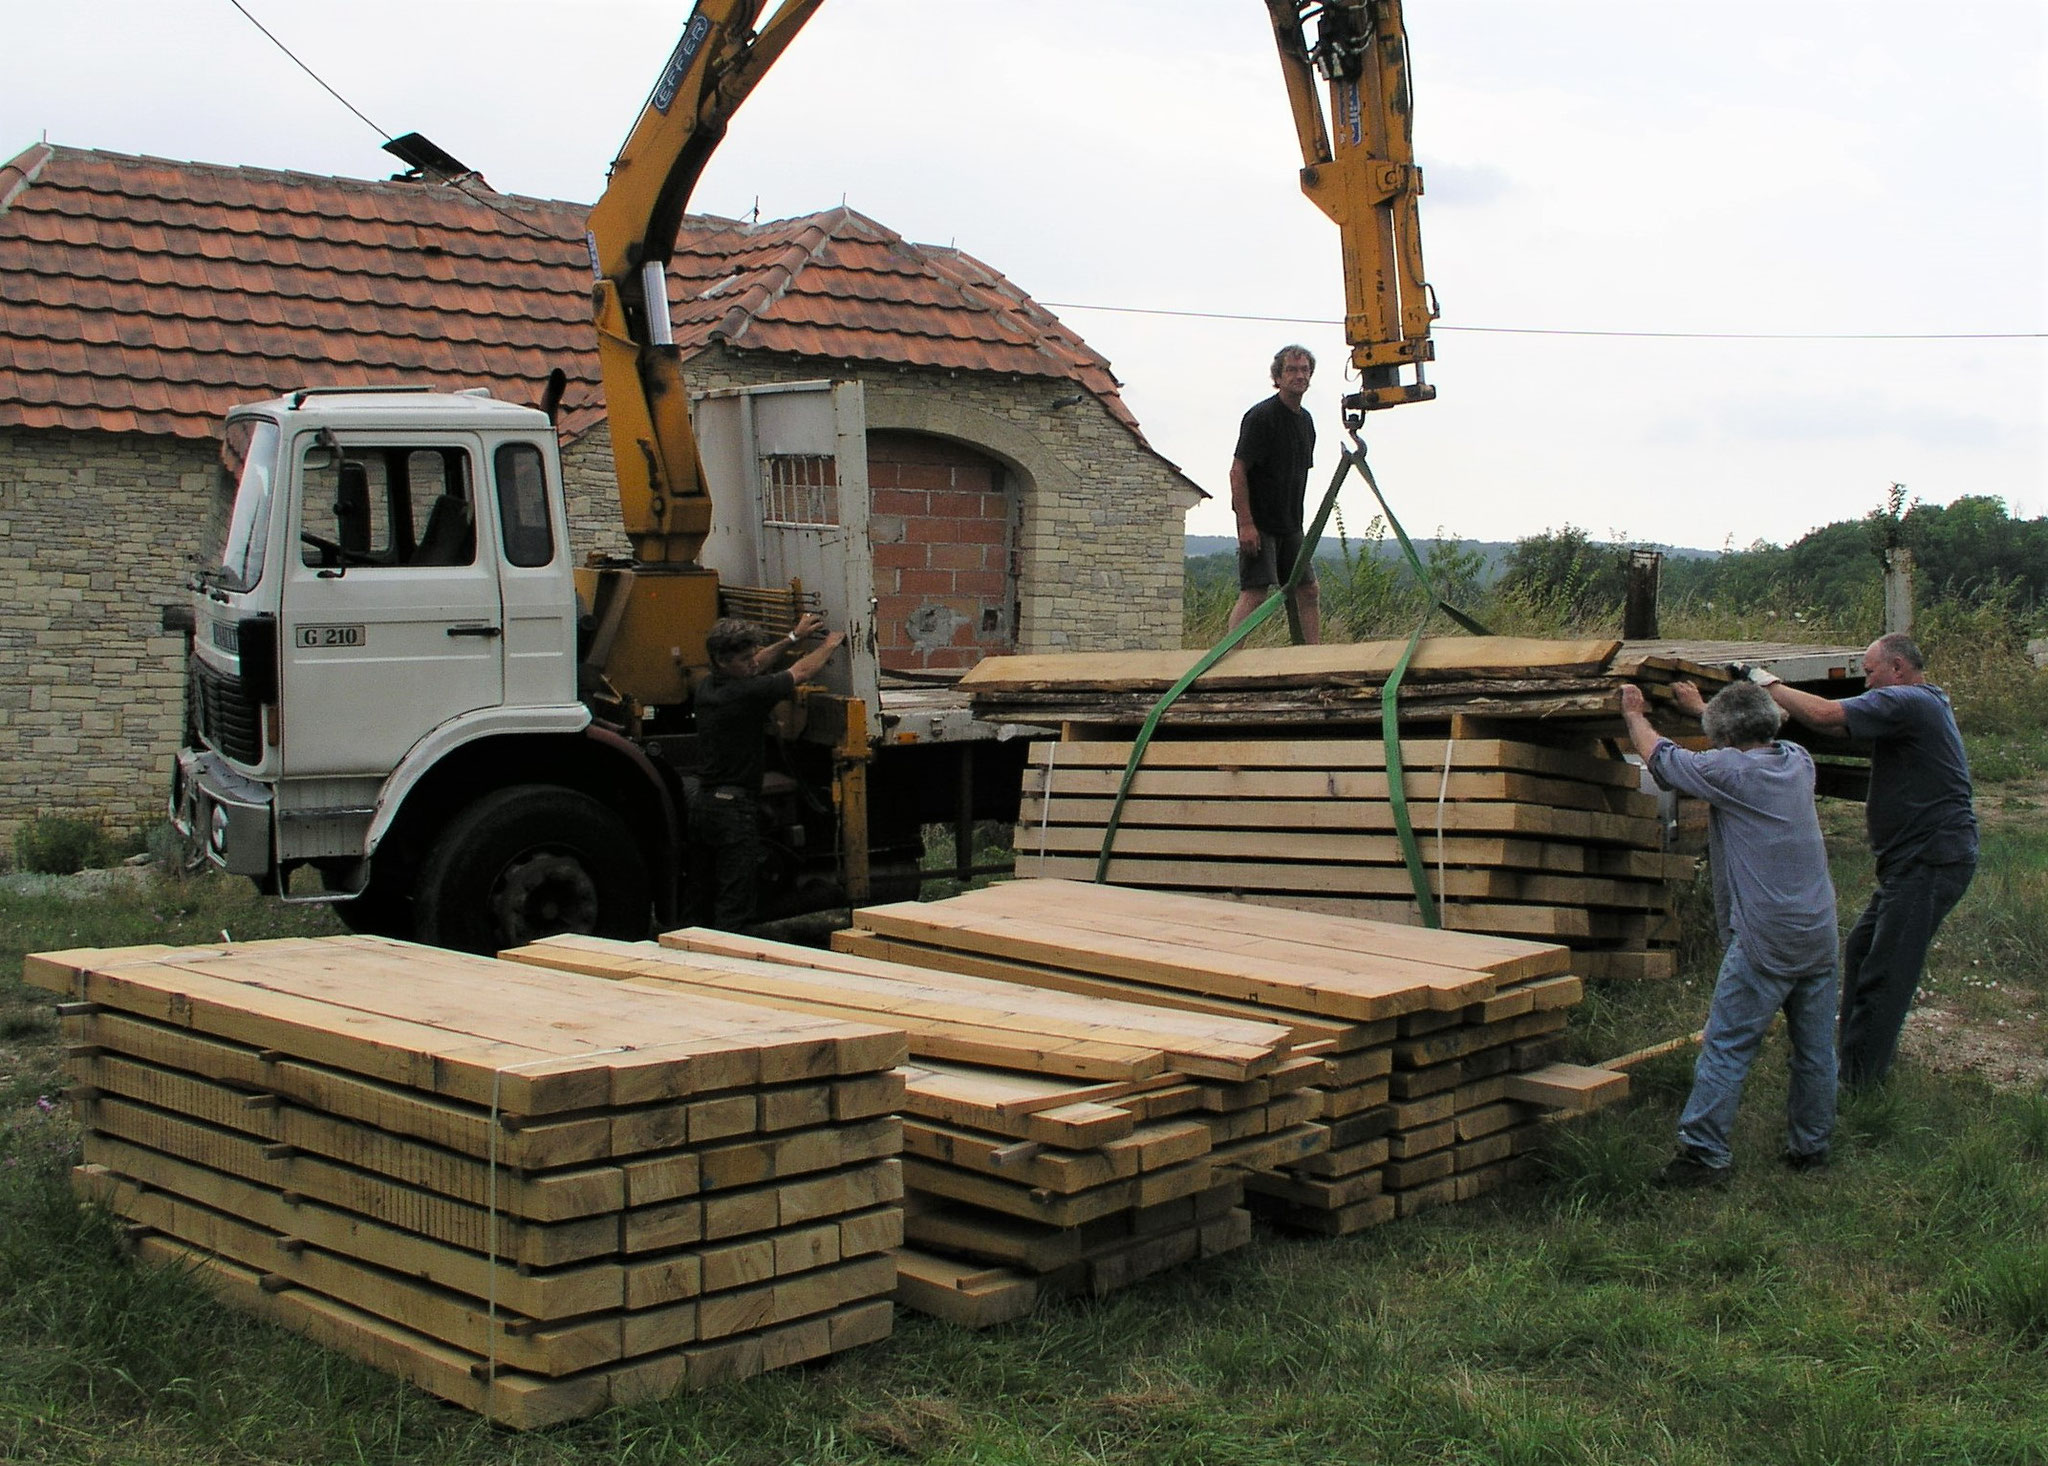 5 - Livraison des bastaings de chêne : pas loin de 4 tonnes ! 